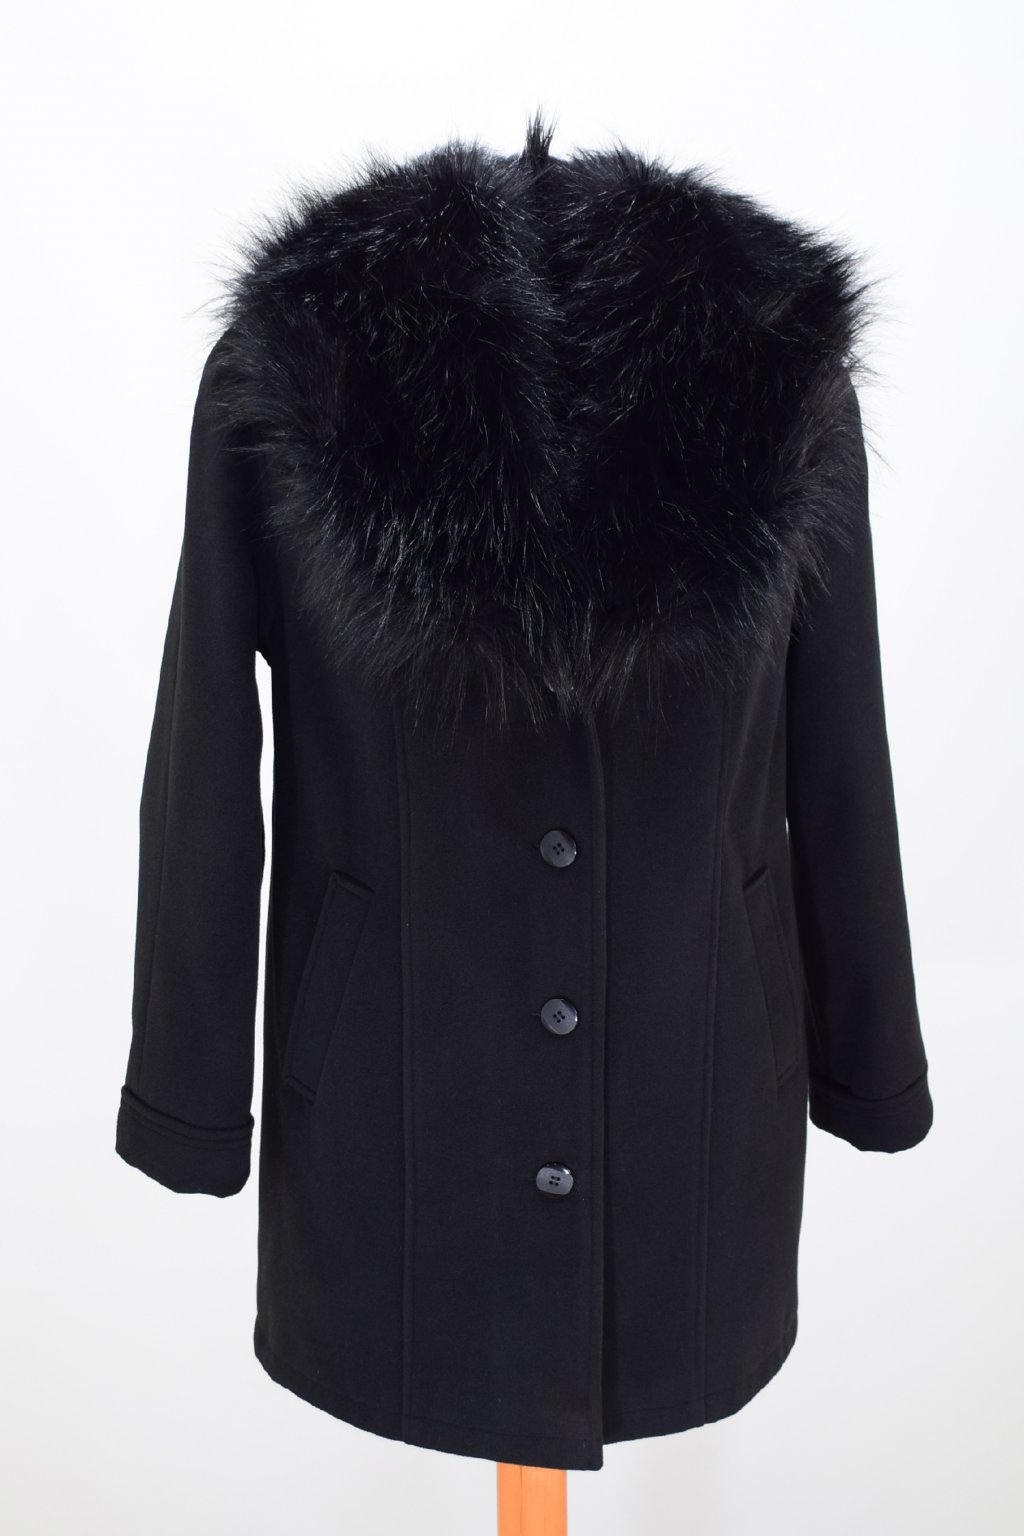 Dámský zimní černý kabát Táňa nadměrné velikosti.